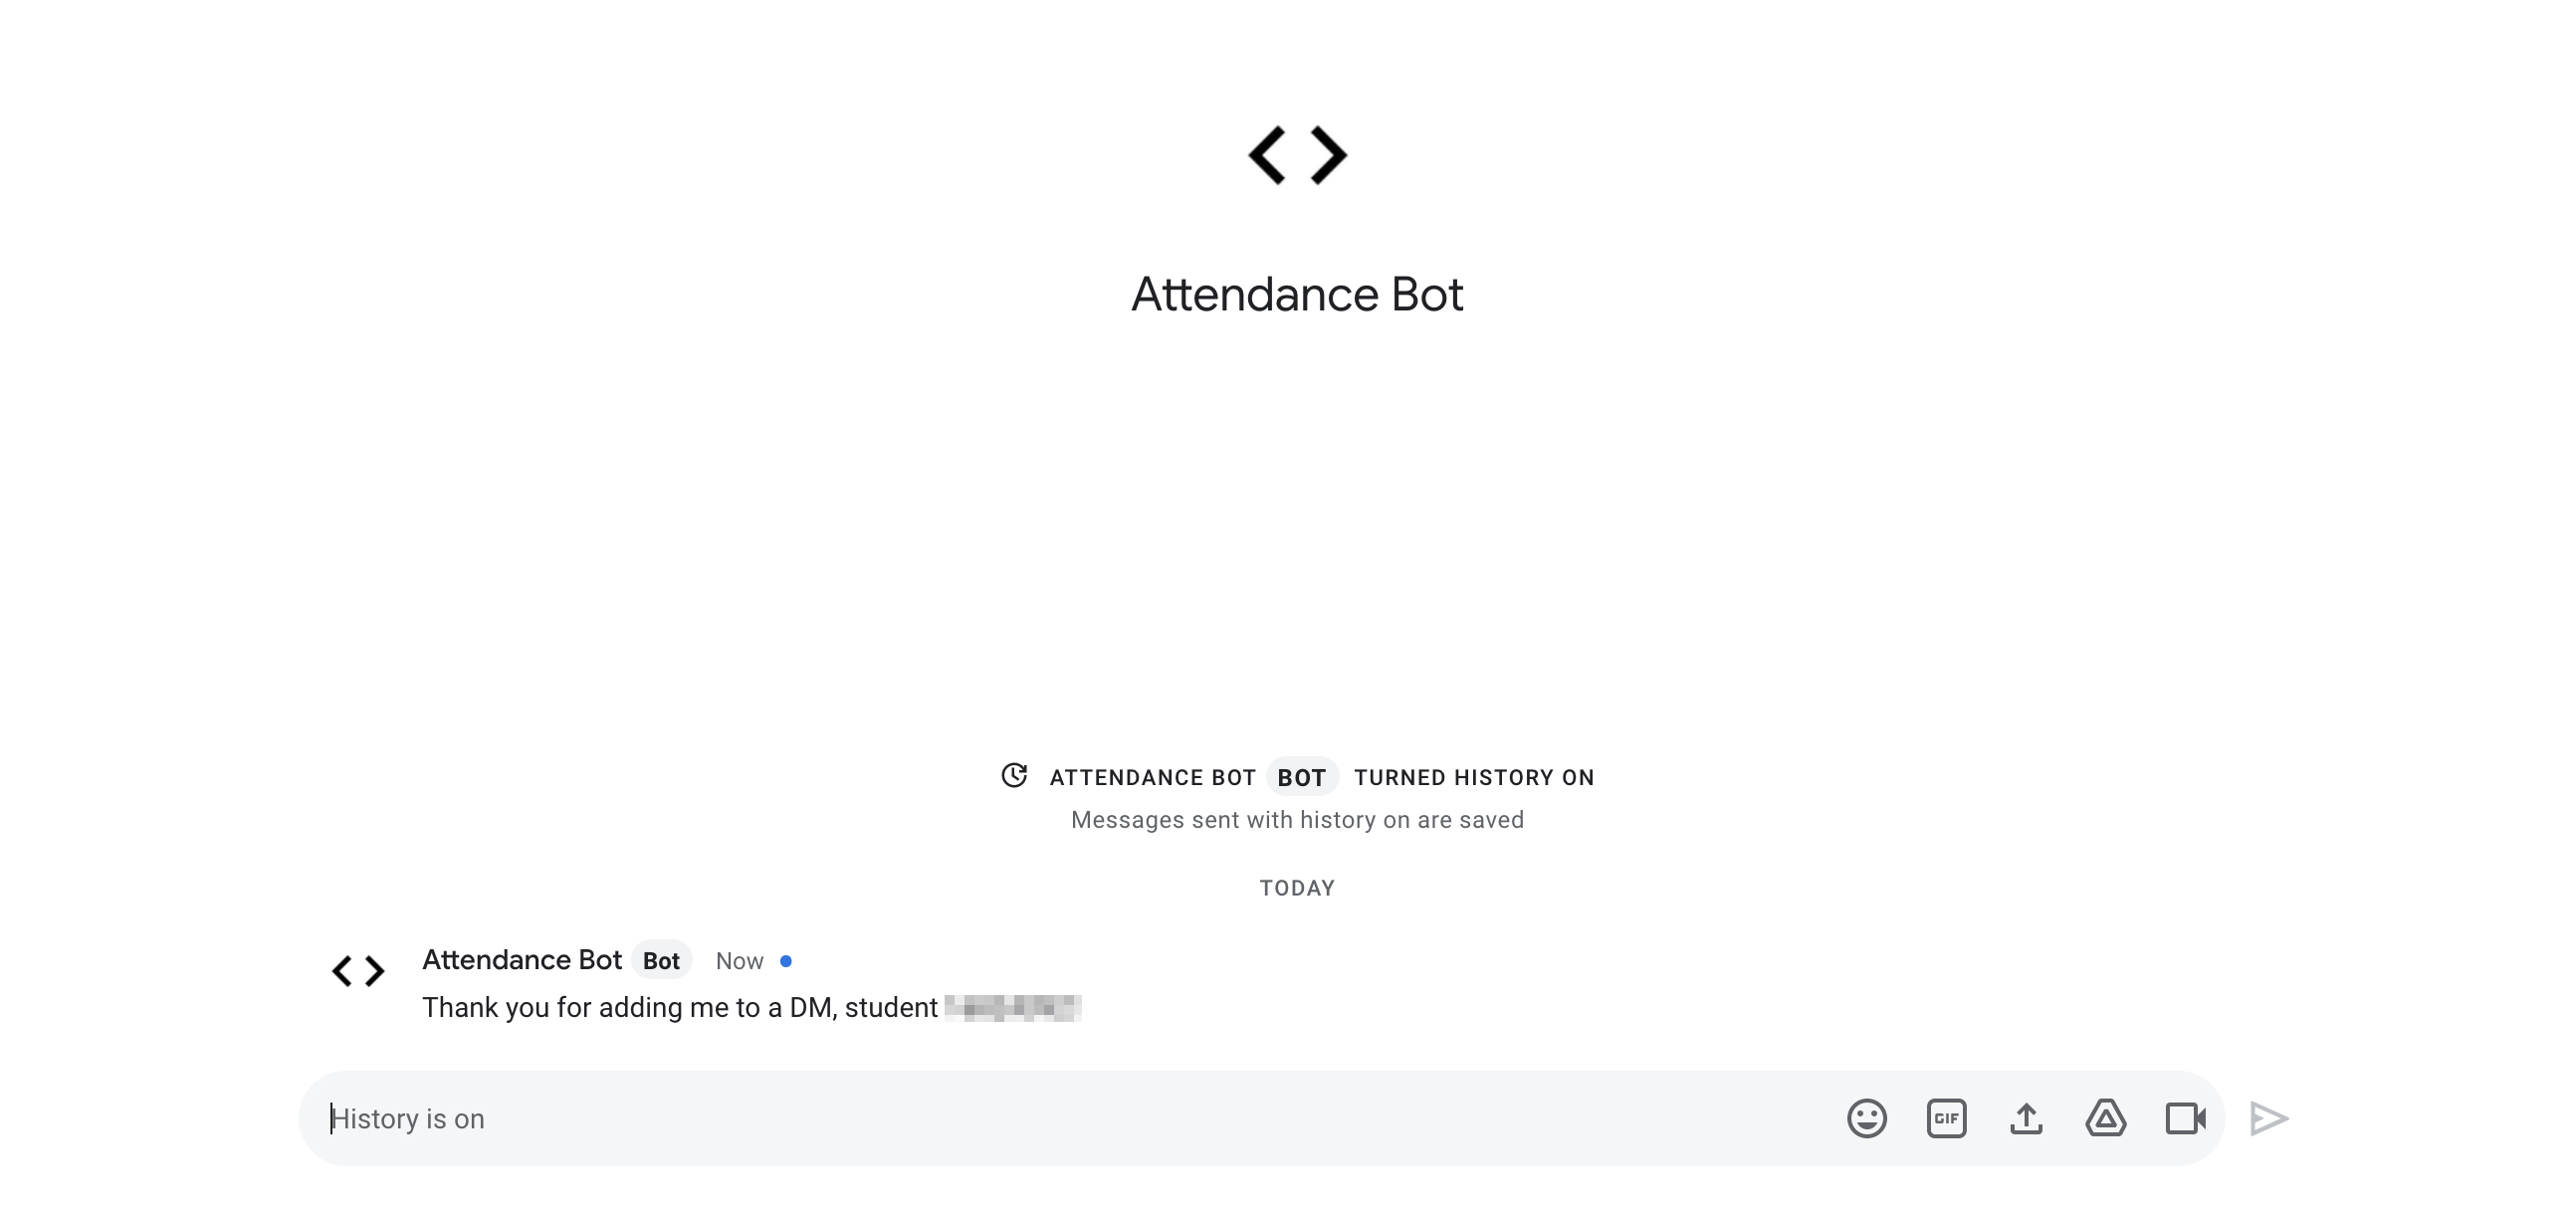 Attendance bot output